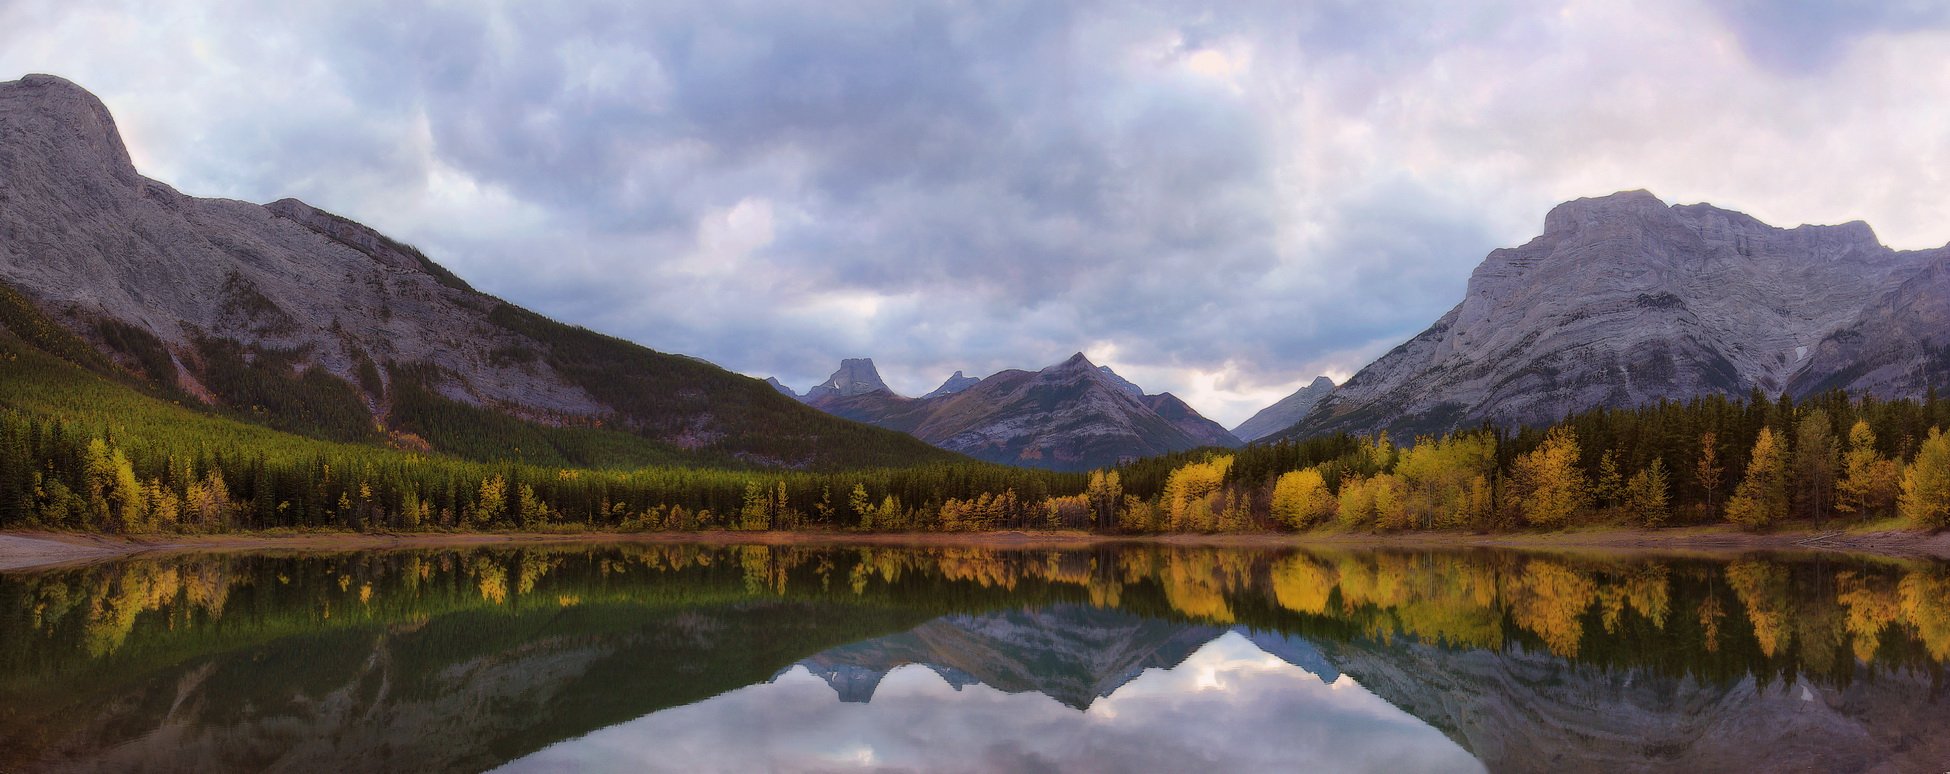 канада, скалистые горы, озеро, осень, отражения, панорама, Екатерина Богданова